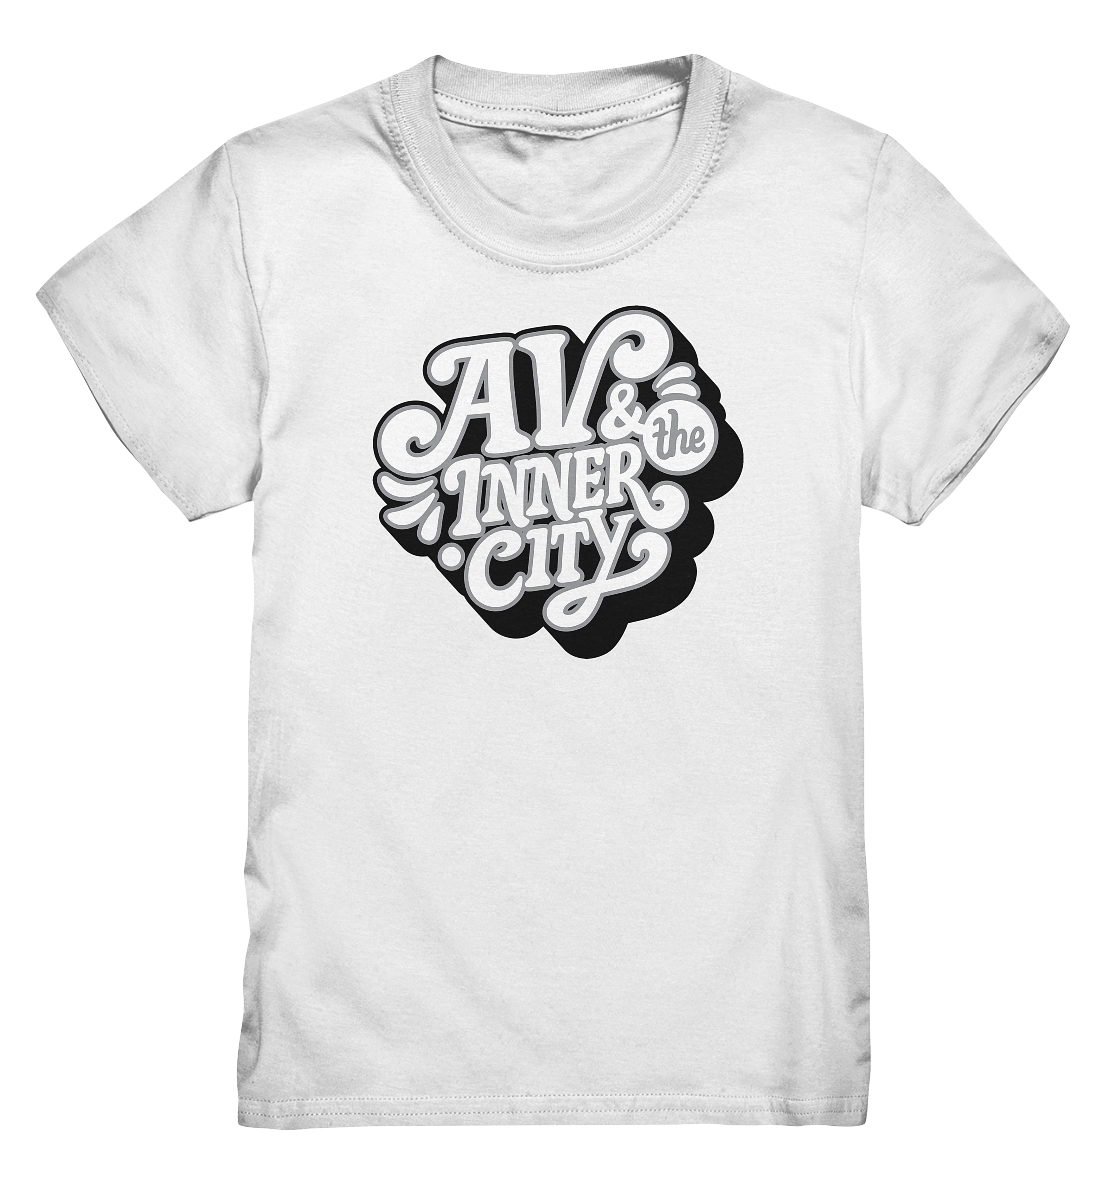 AV & the Inner City / Black - Kids Premium Shirt